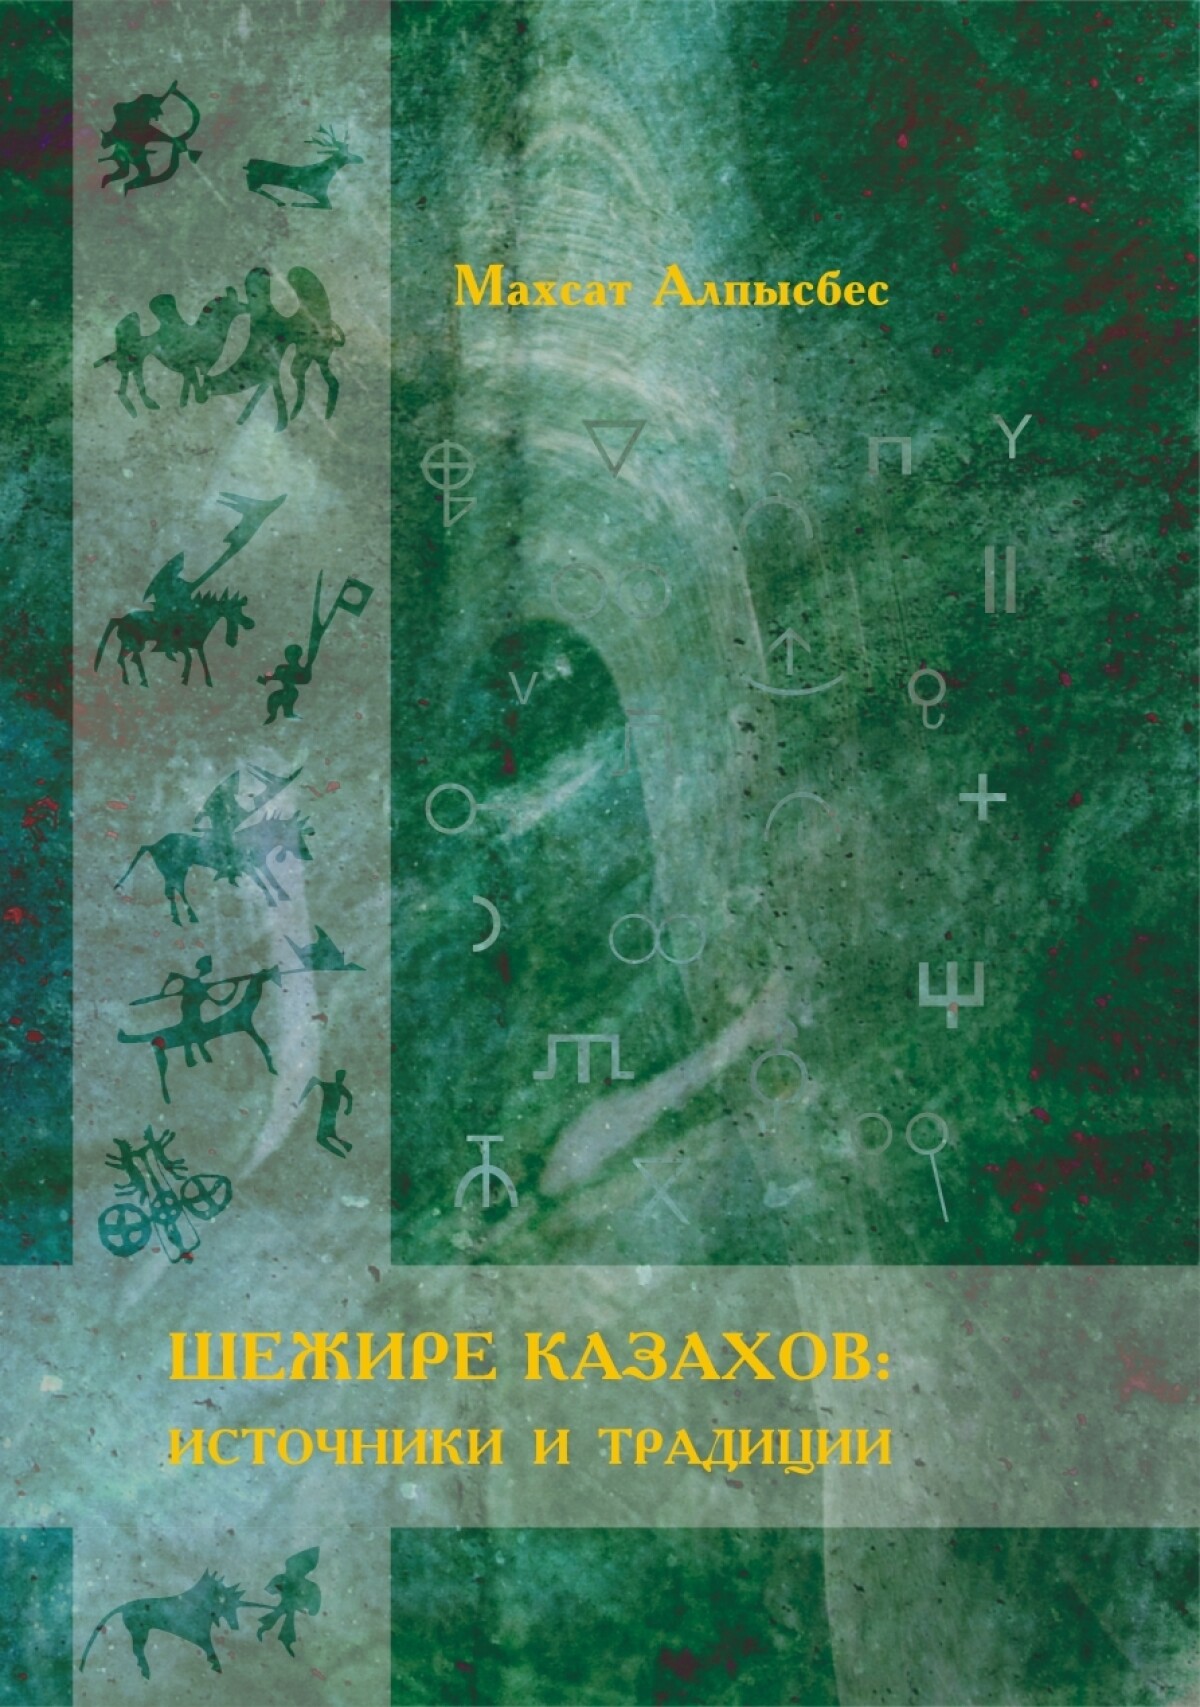 Шежире казахов: источники и традиции - e-history.kz